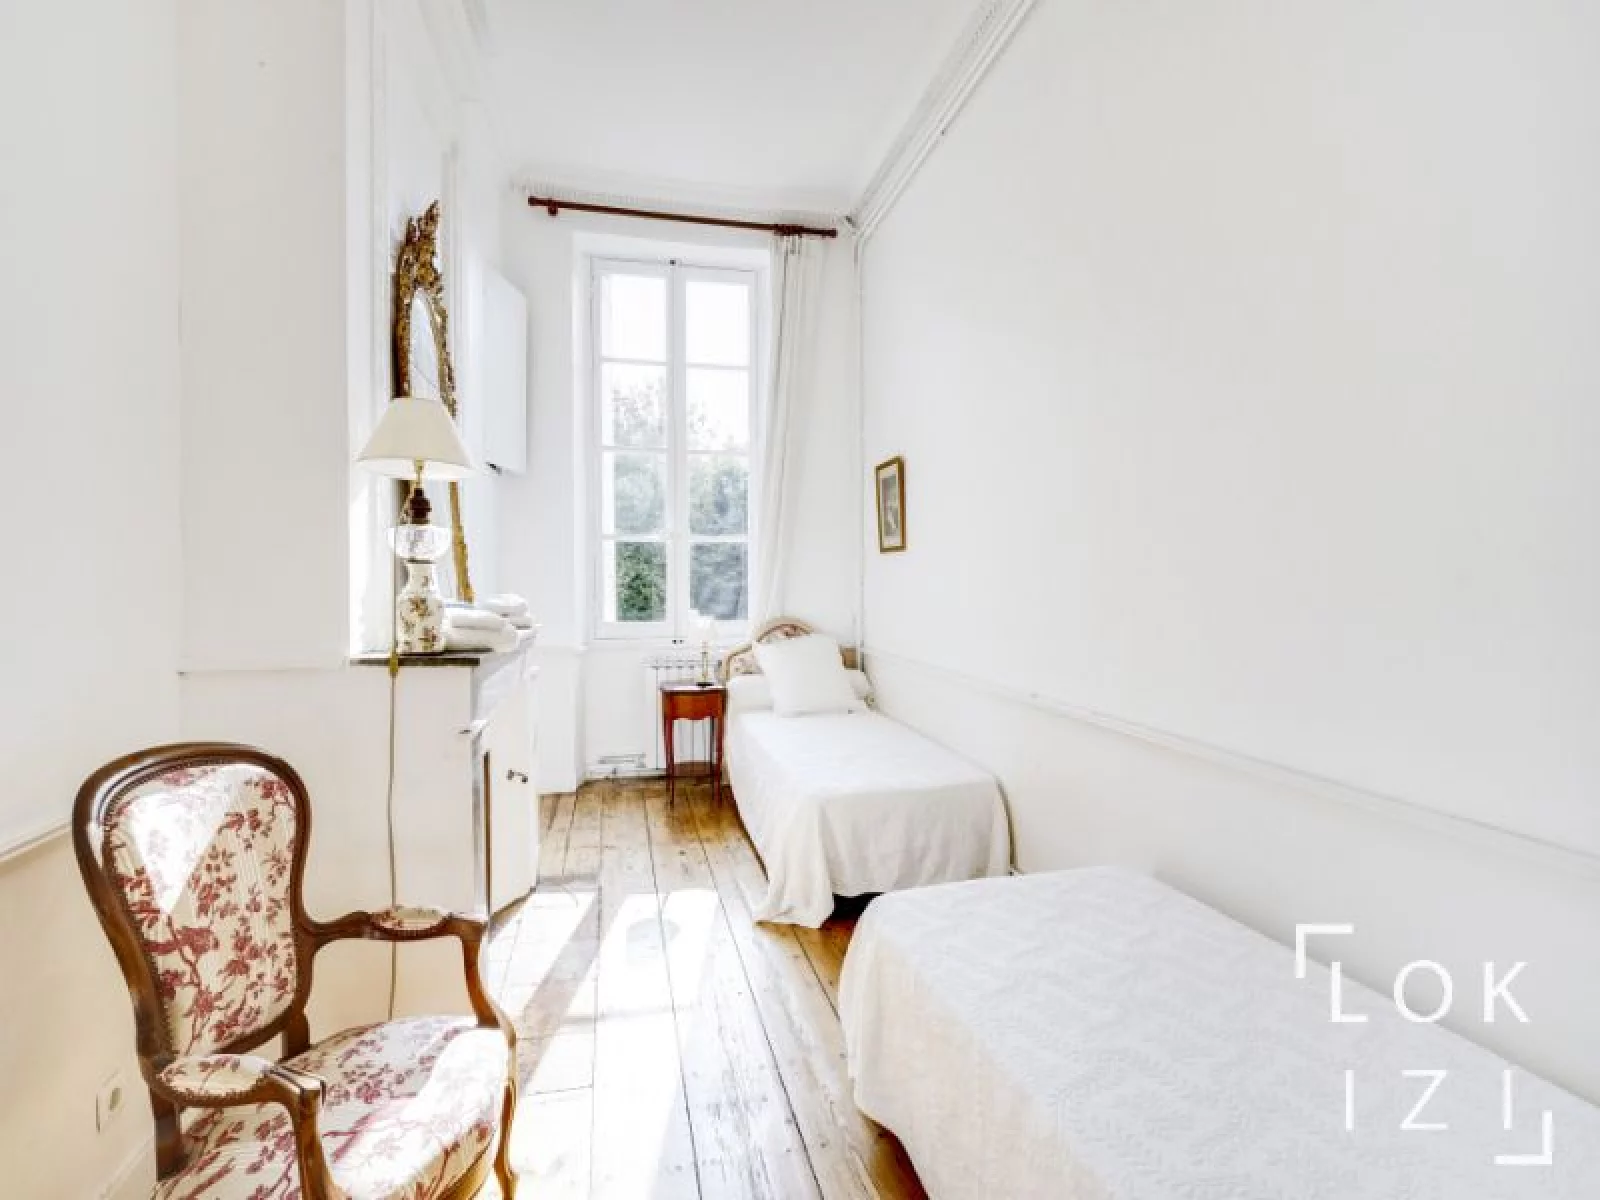 Location maison meublée 377m² (Bordeaux - St Michel)